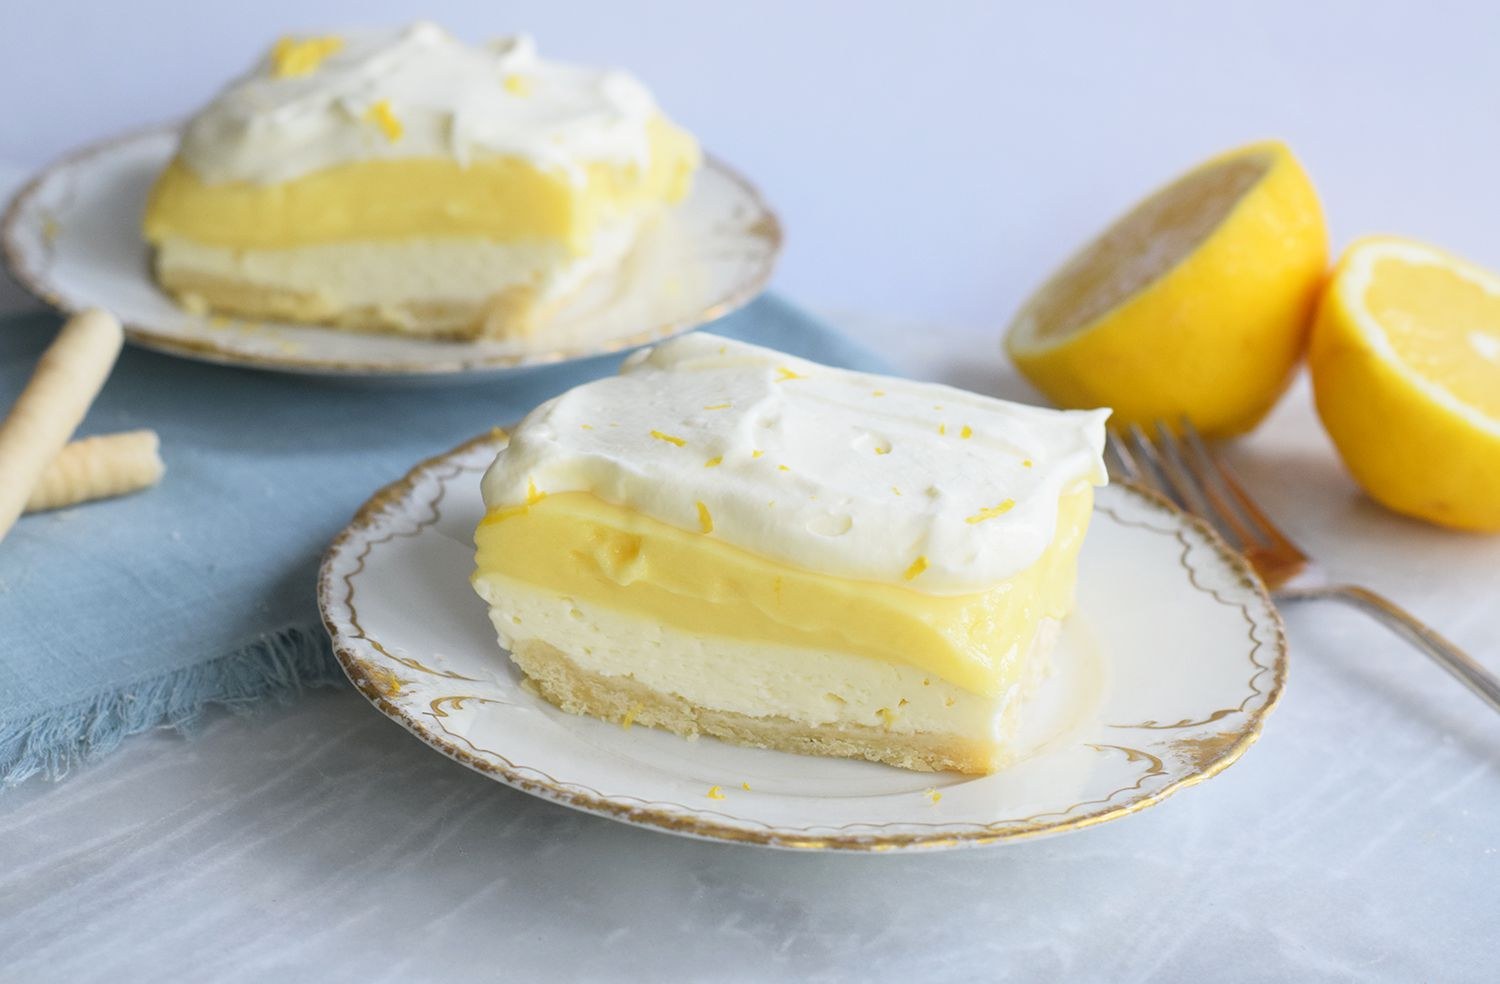 Крем из лимонов для тортов. Монастырская кухня лимонный пирог. Пирожное с лимонным курдом. Лимонный крем чиз. Торт с лимонным курдом и крем чизом.